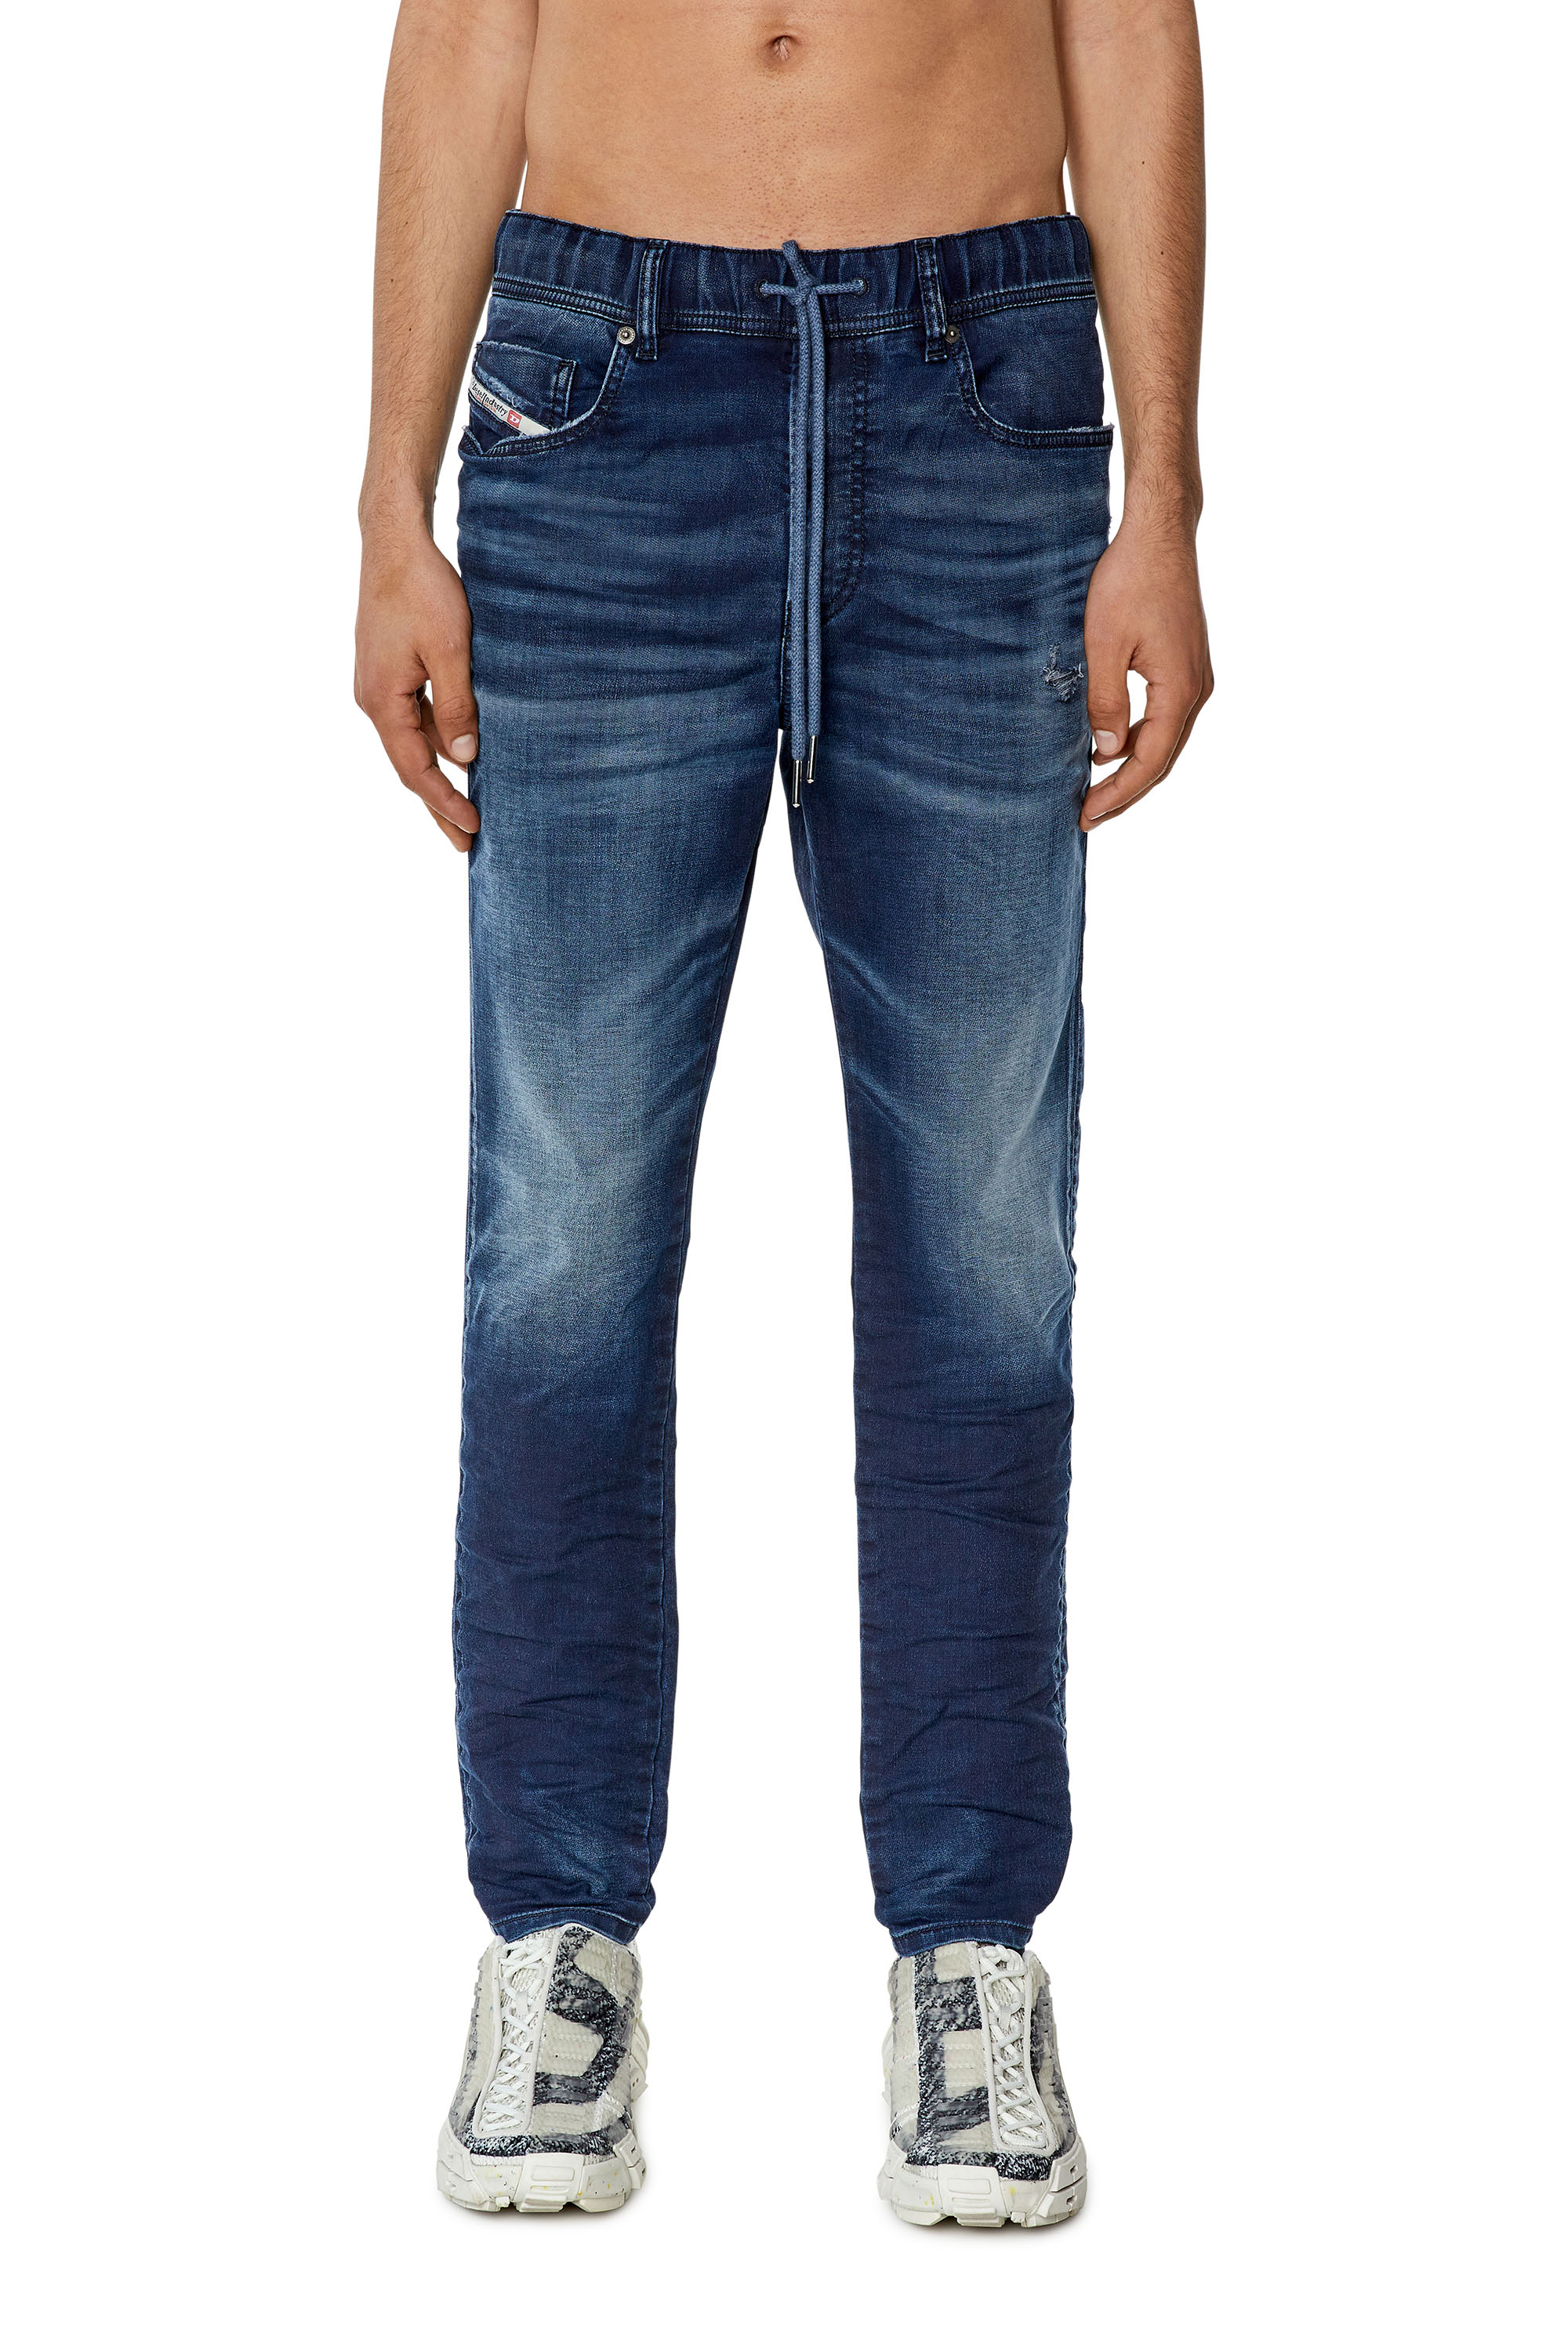 Diesel - Slim E-Spender JoggJeans® 068FQ, Dark Blue - Image 2